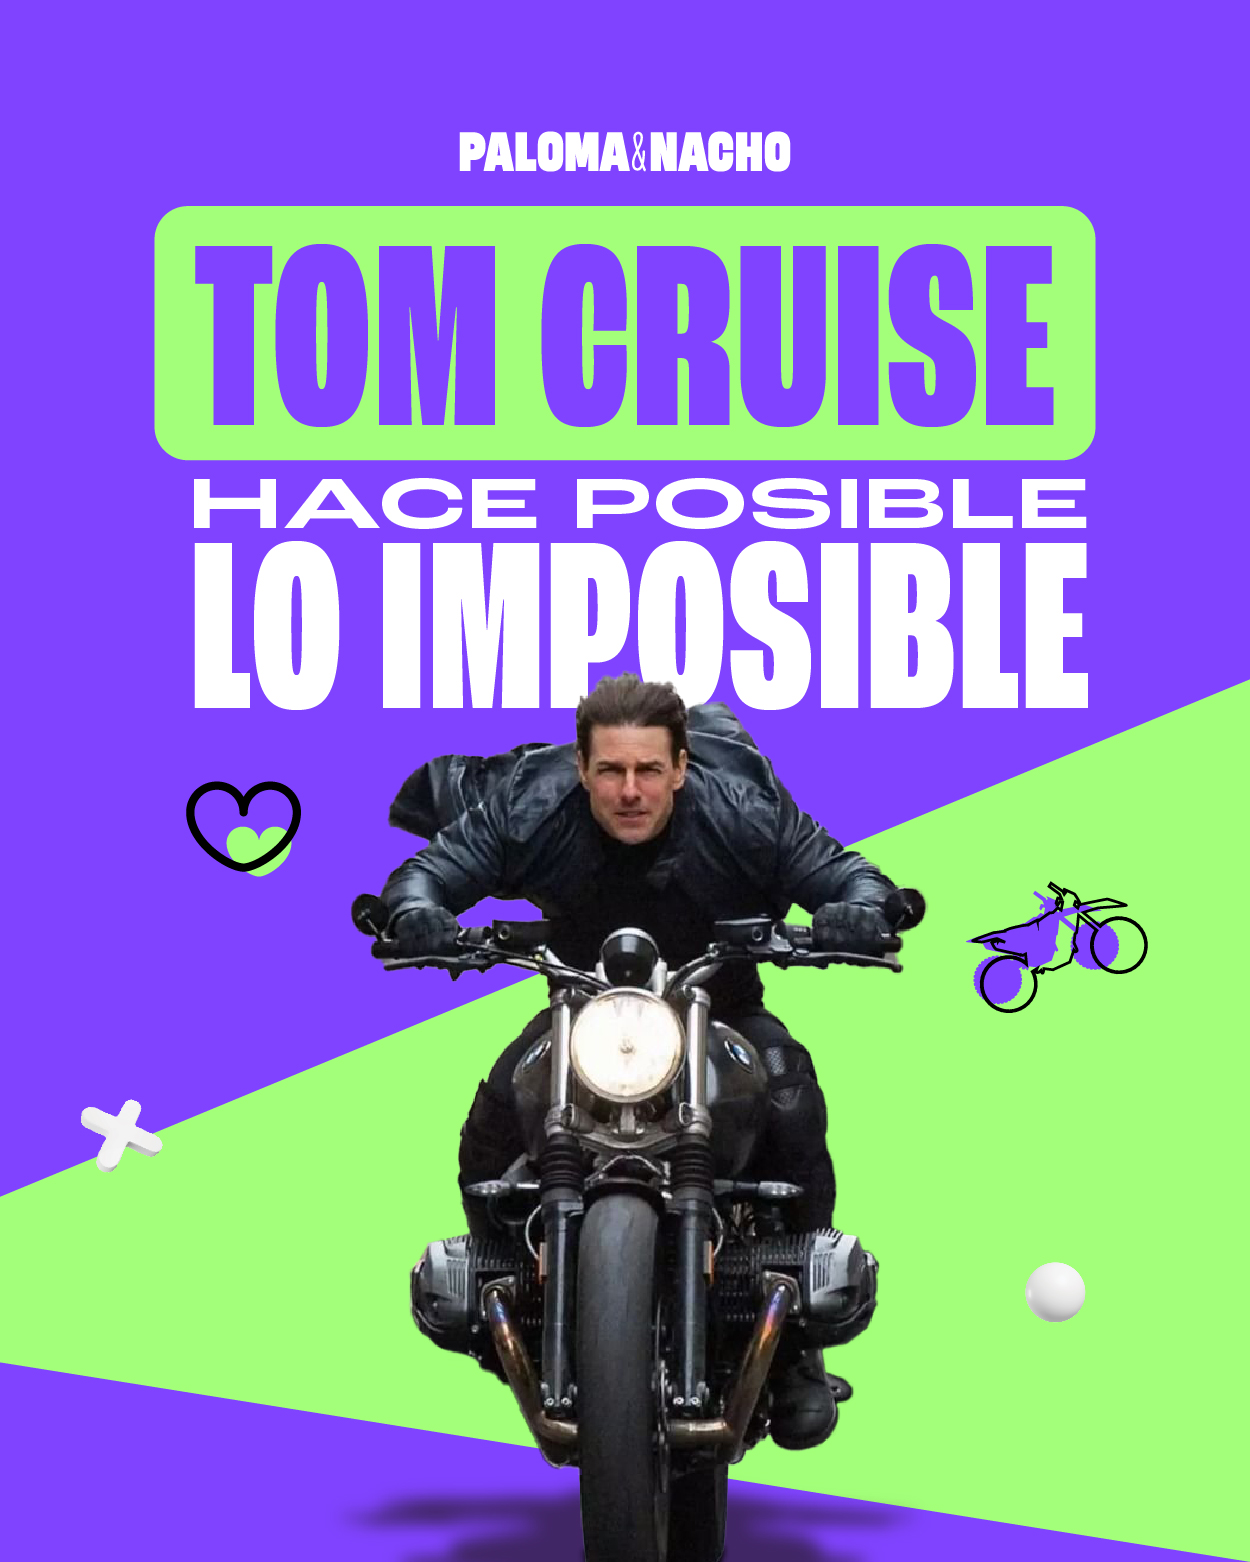 Misión Imposible las acrobacias más peligrosas de Tom Cruise